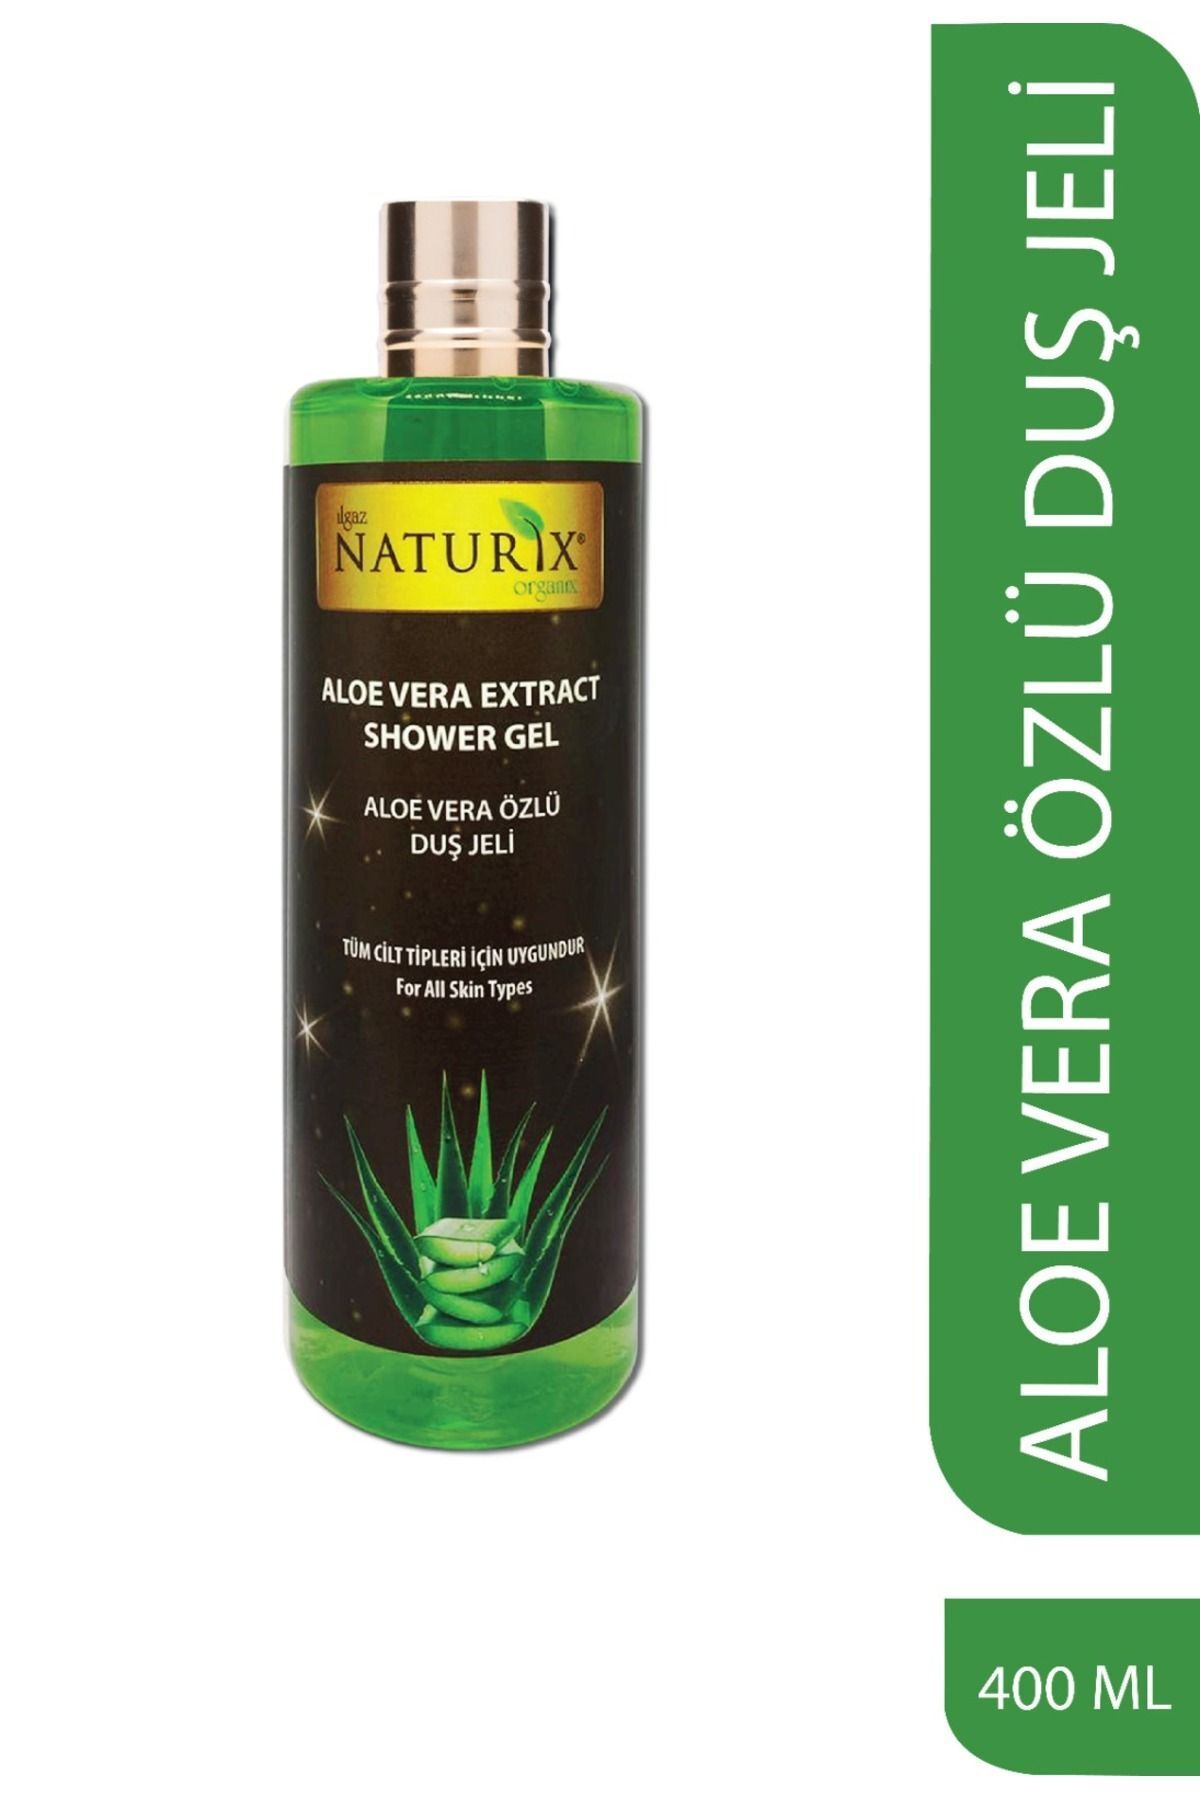 Naturix Aloe Vera Duş Jeli Nemlendirici Duş Jeli Therapy Kalıcı Koku Parfüm Etkili Duş Jeli 400 Ml